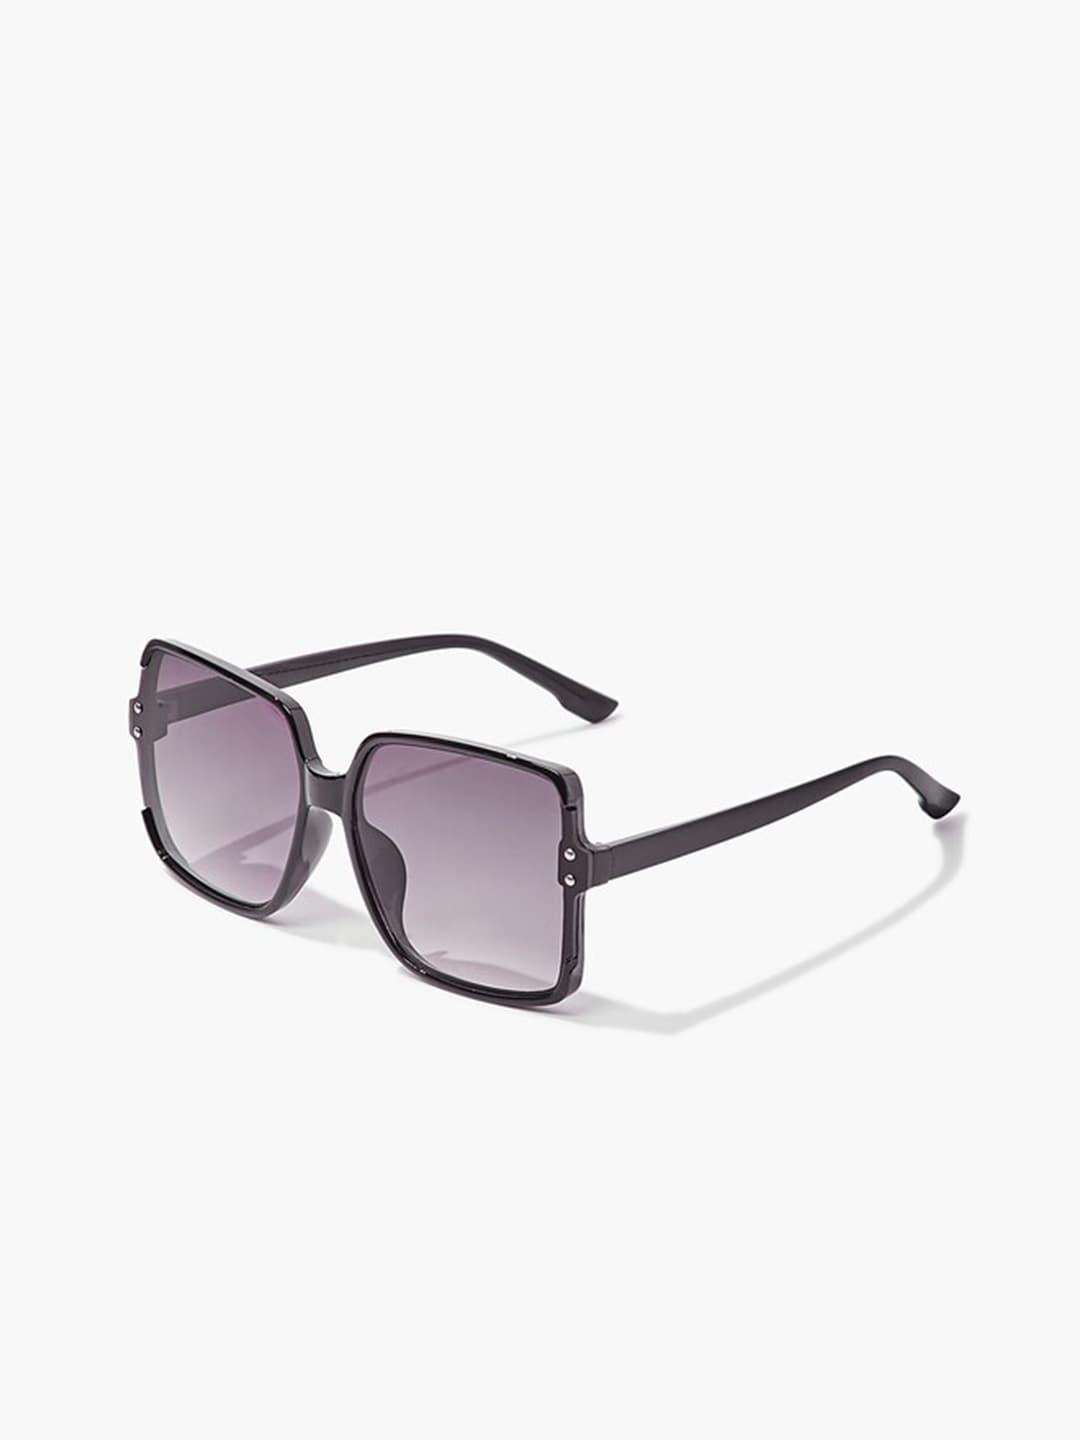 forever-21-women-oversized-sunglasses-f20045307302